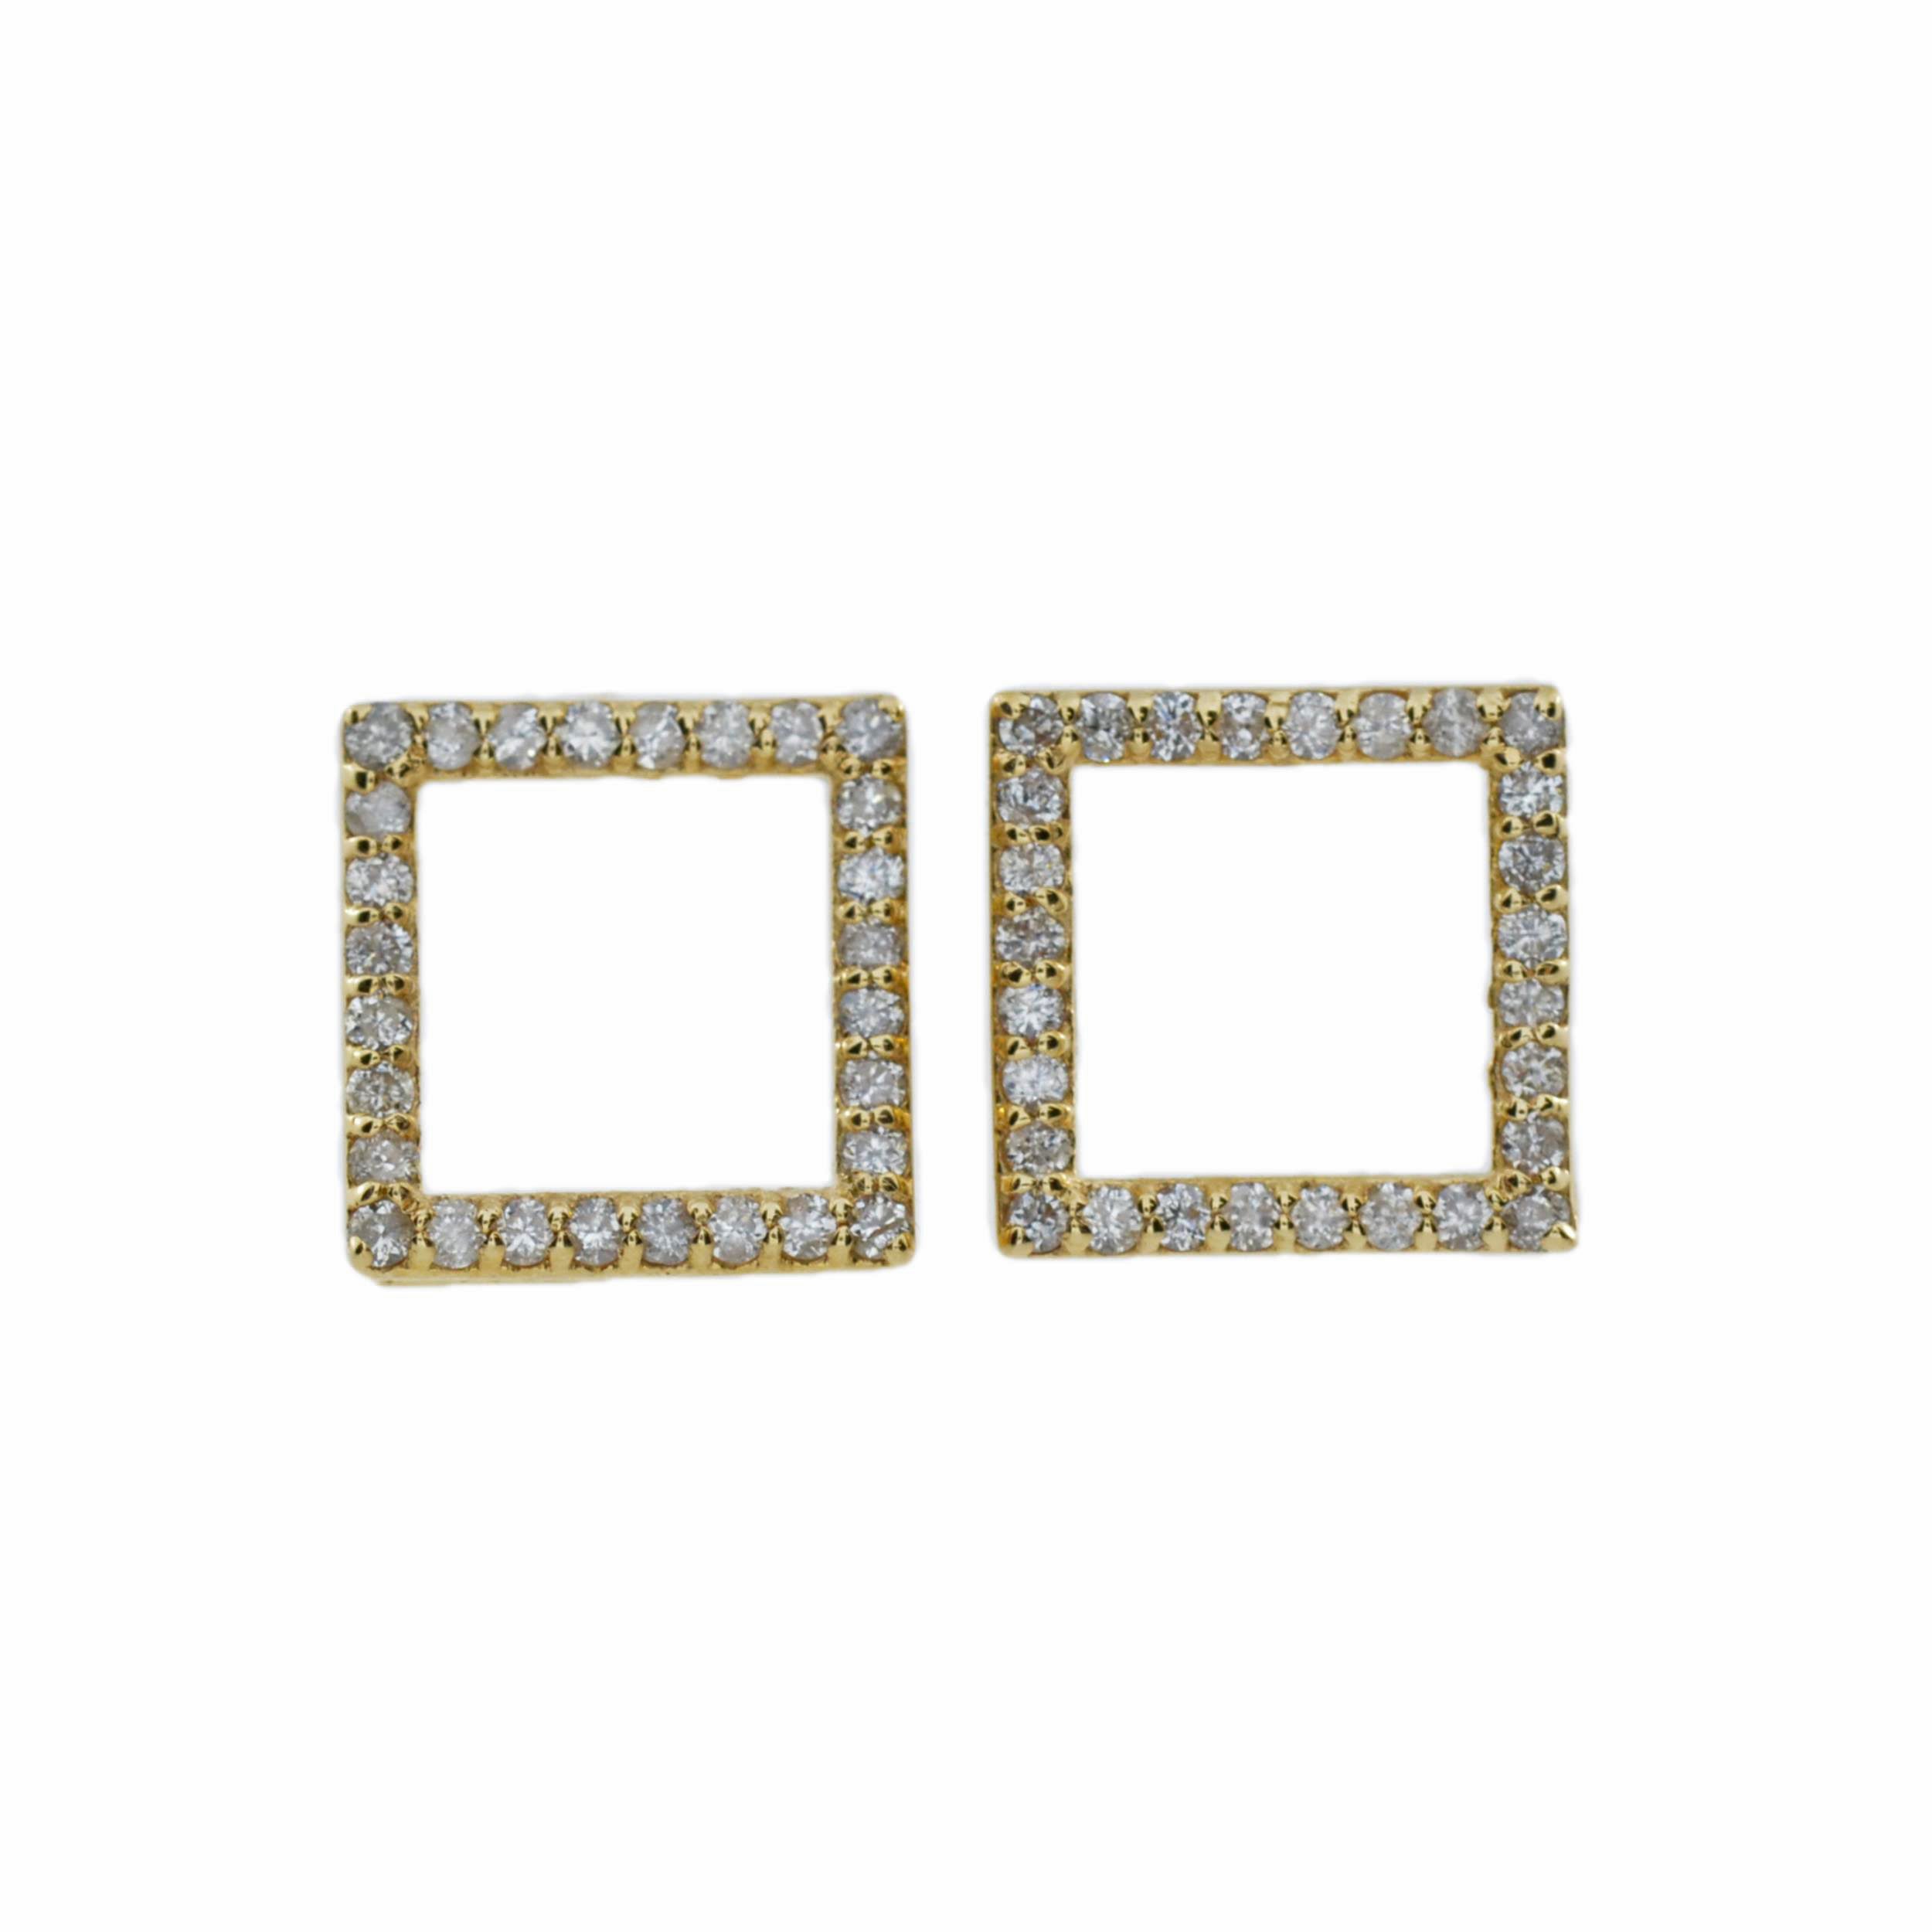 14Kt Gold 0.25 Ct Lab Grown Diamond Open Square Diamond Earrings Stud Earrings